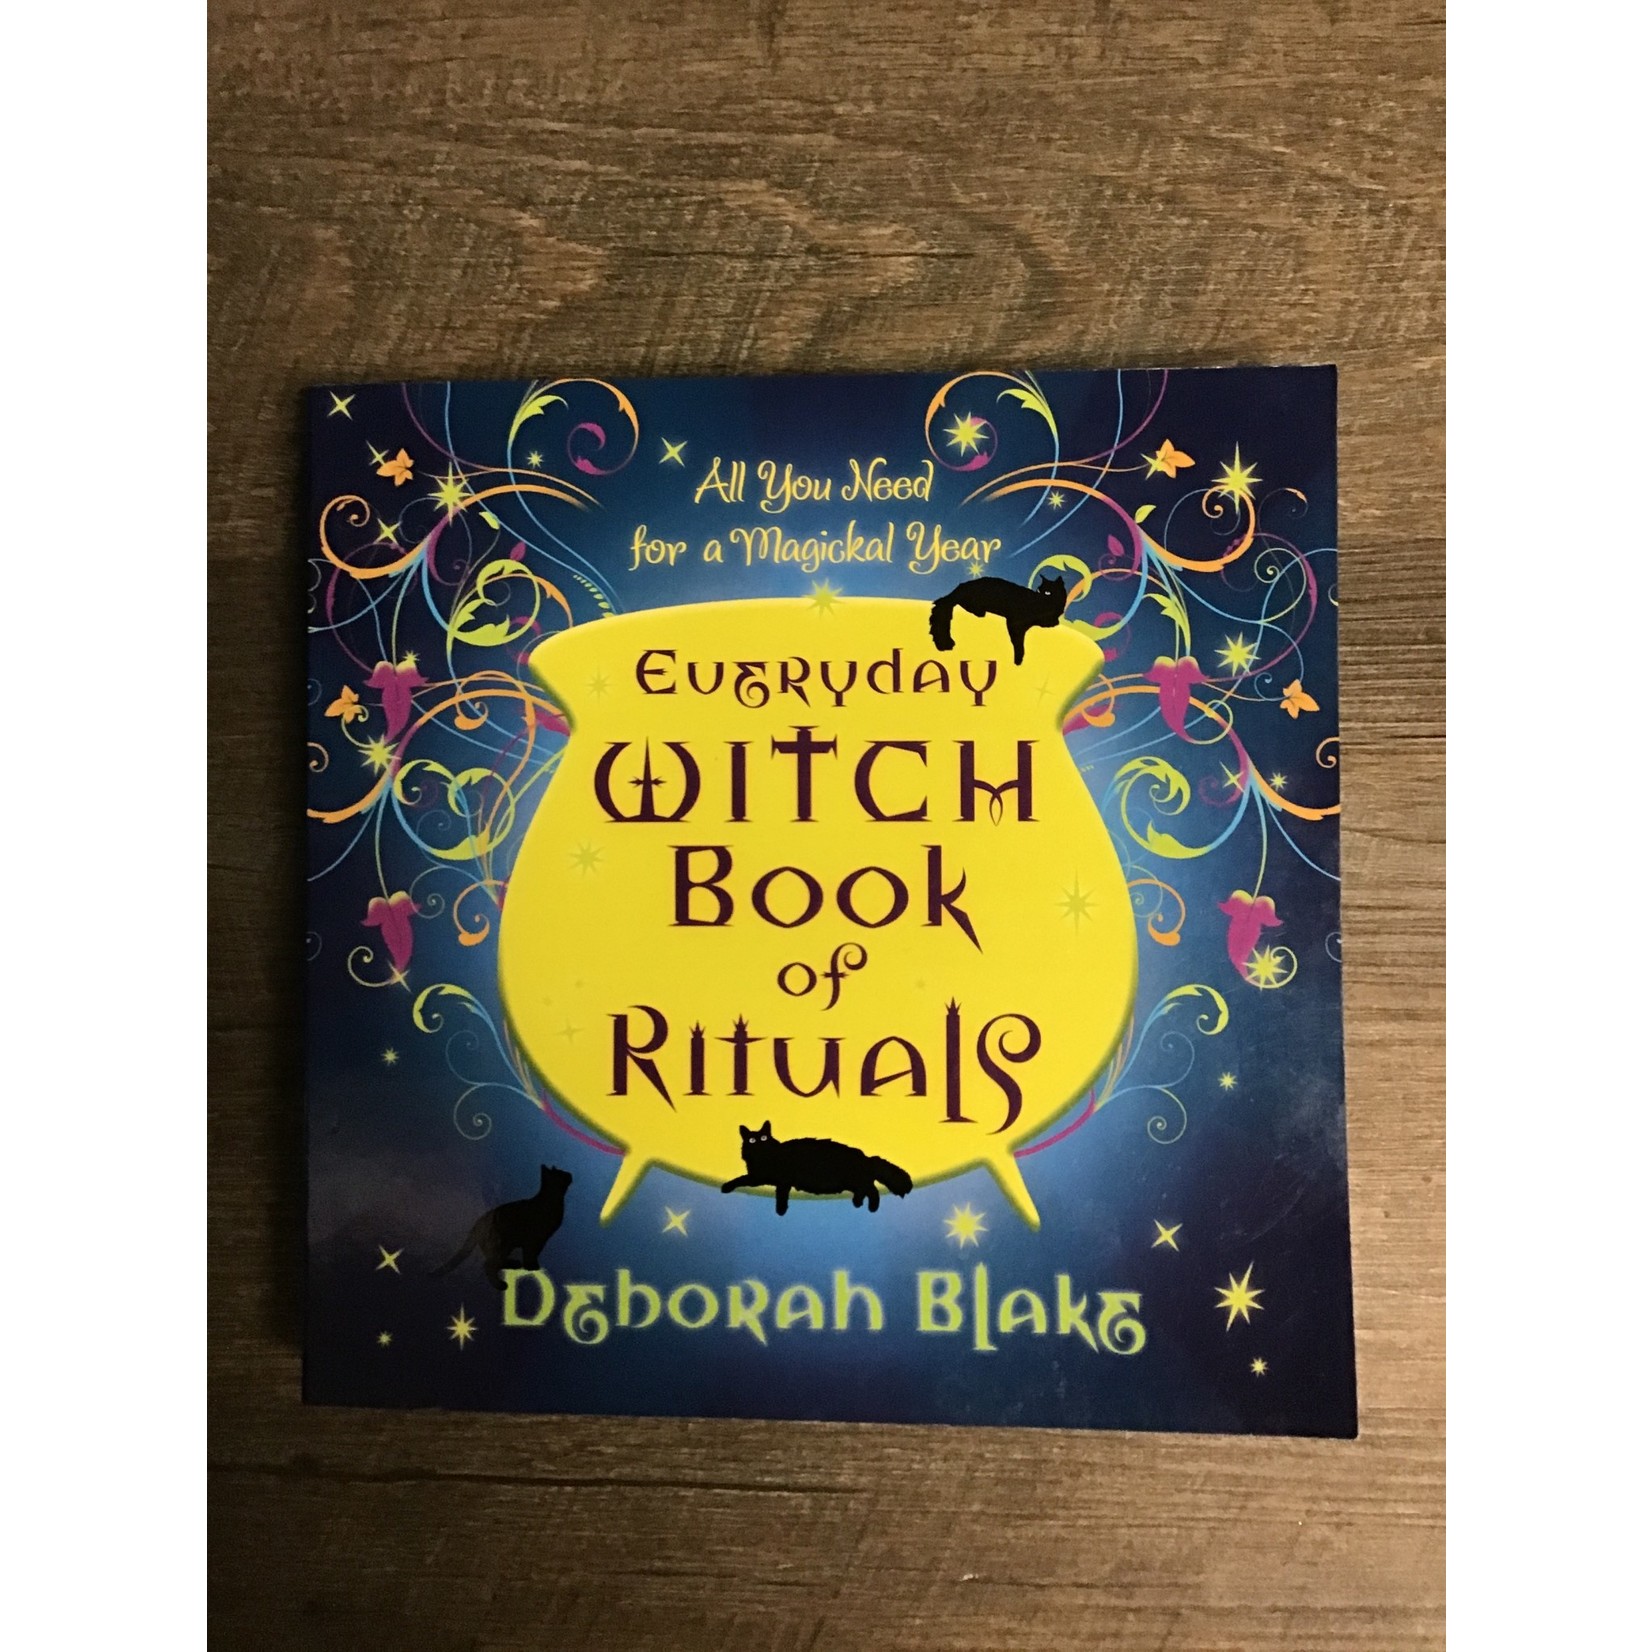 Everyday Witchcraft - Deborah Blake